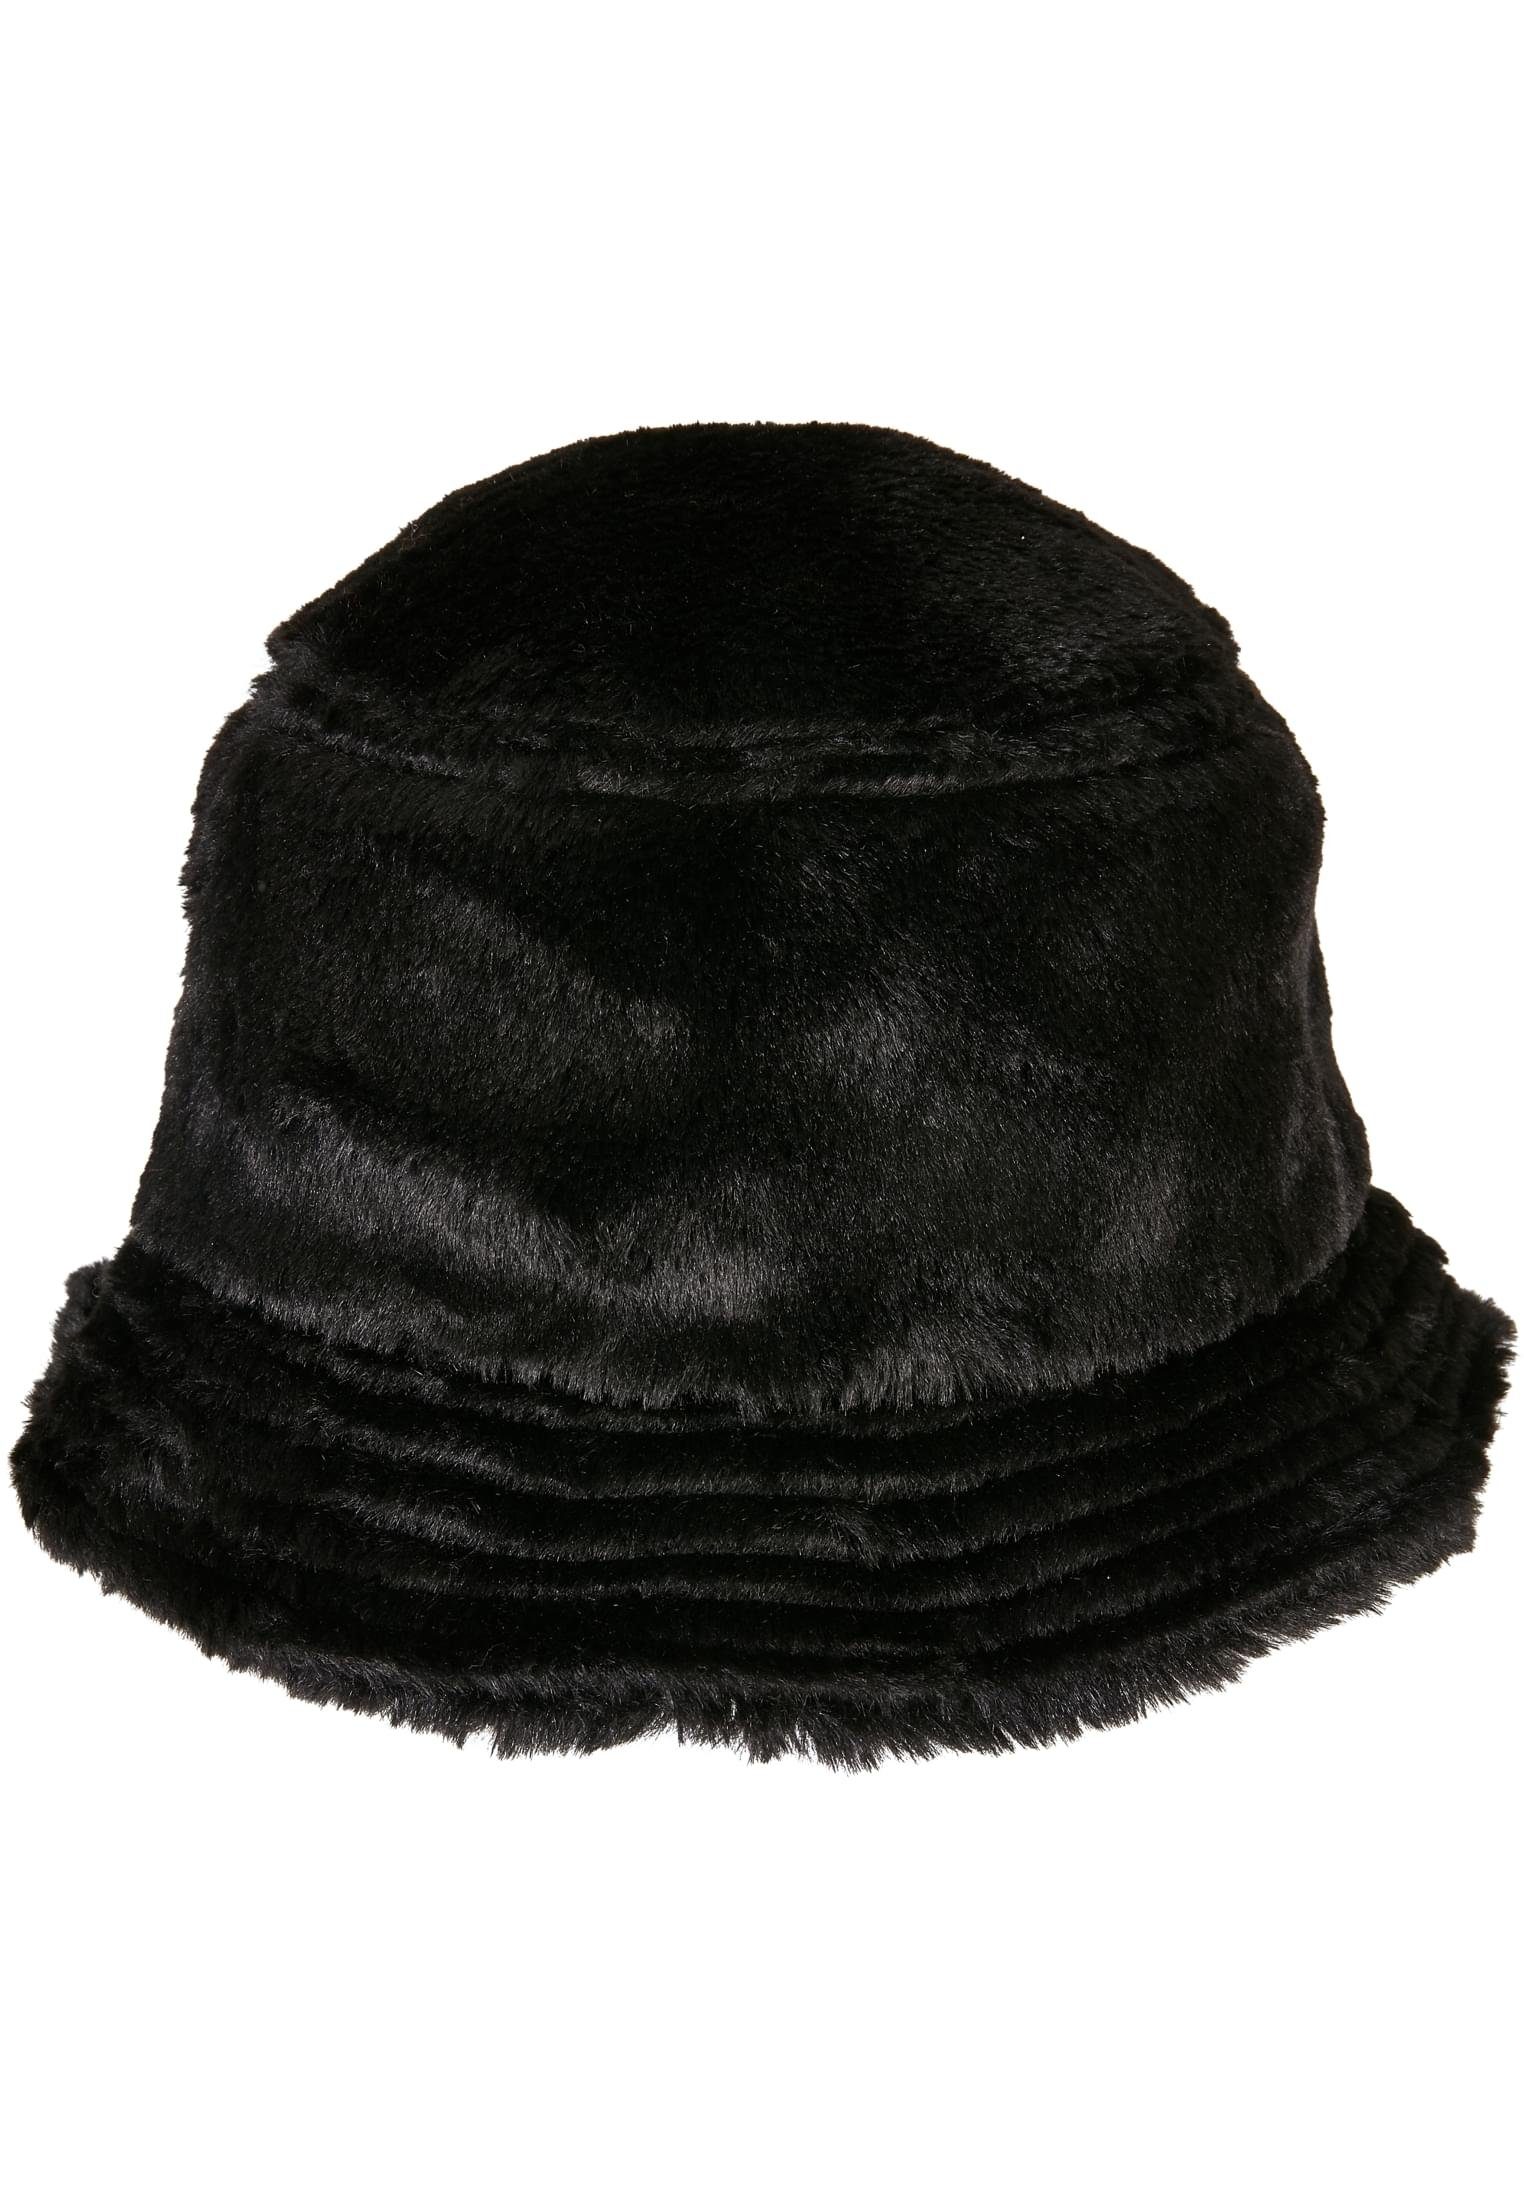 Cap Accessoires Bucket Hat Flex Flexfit Fur Fake